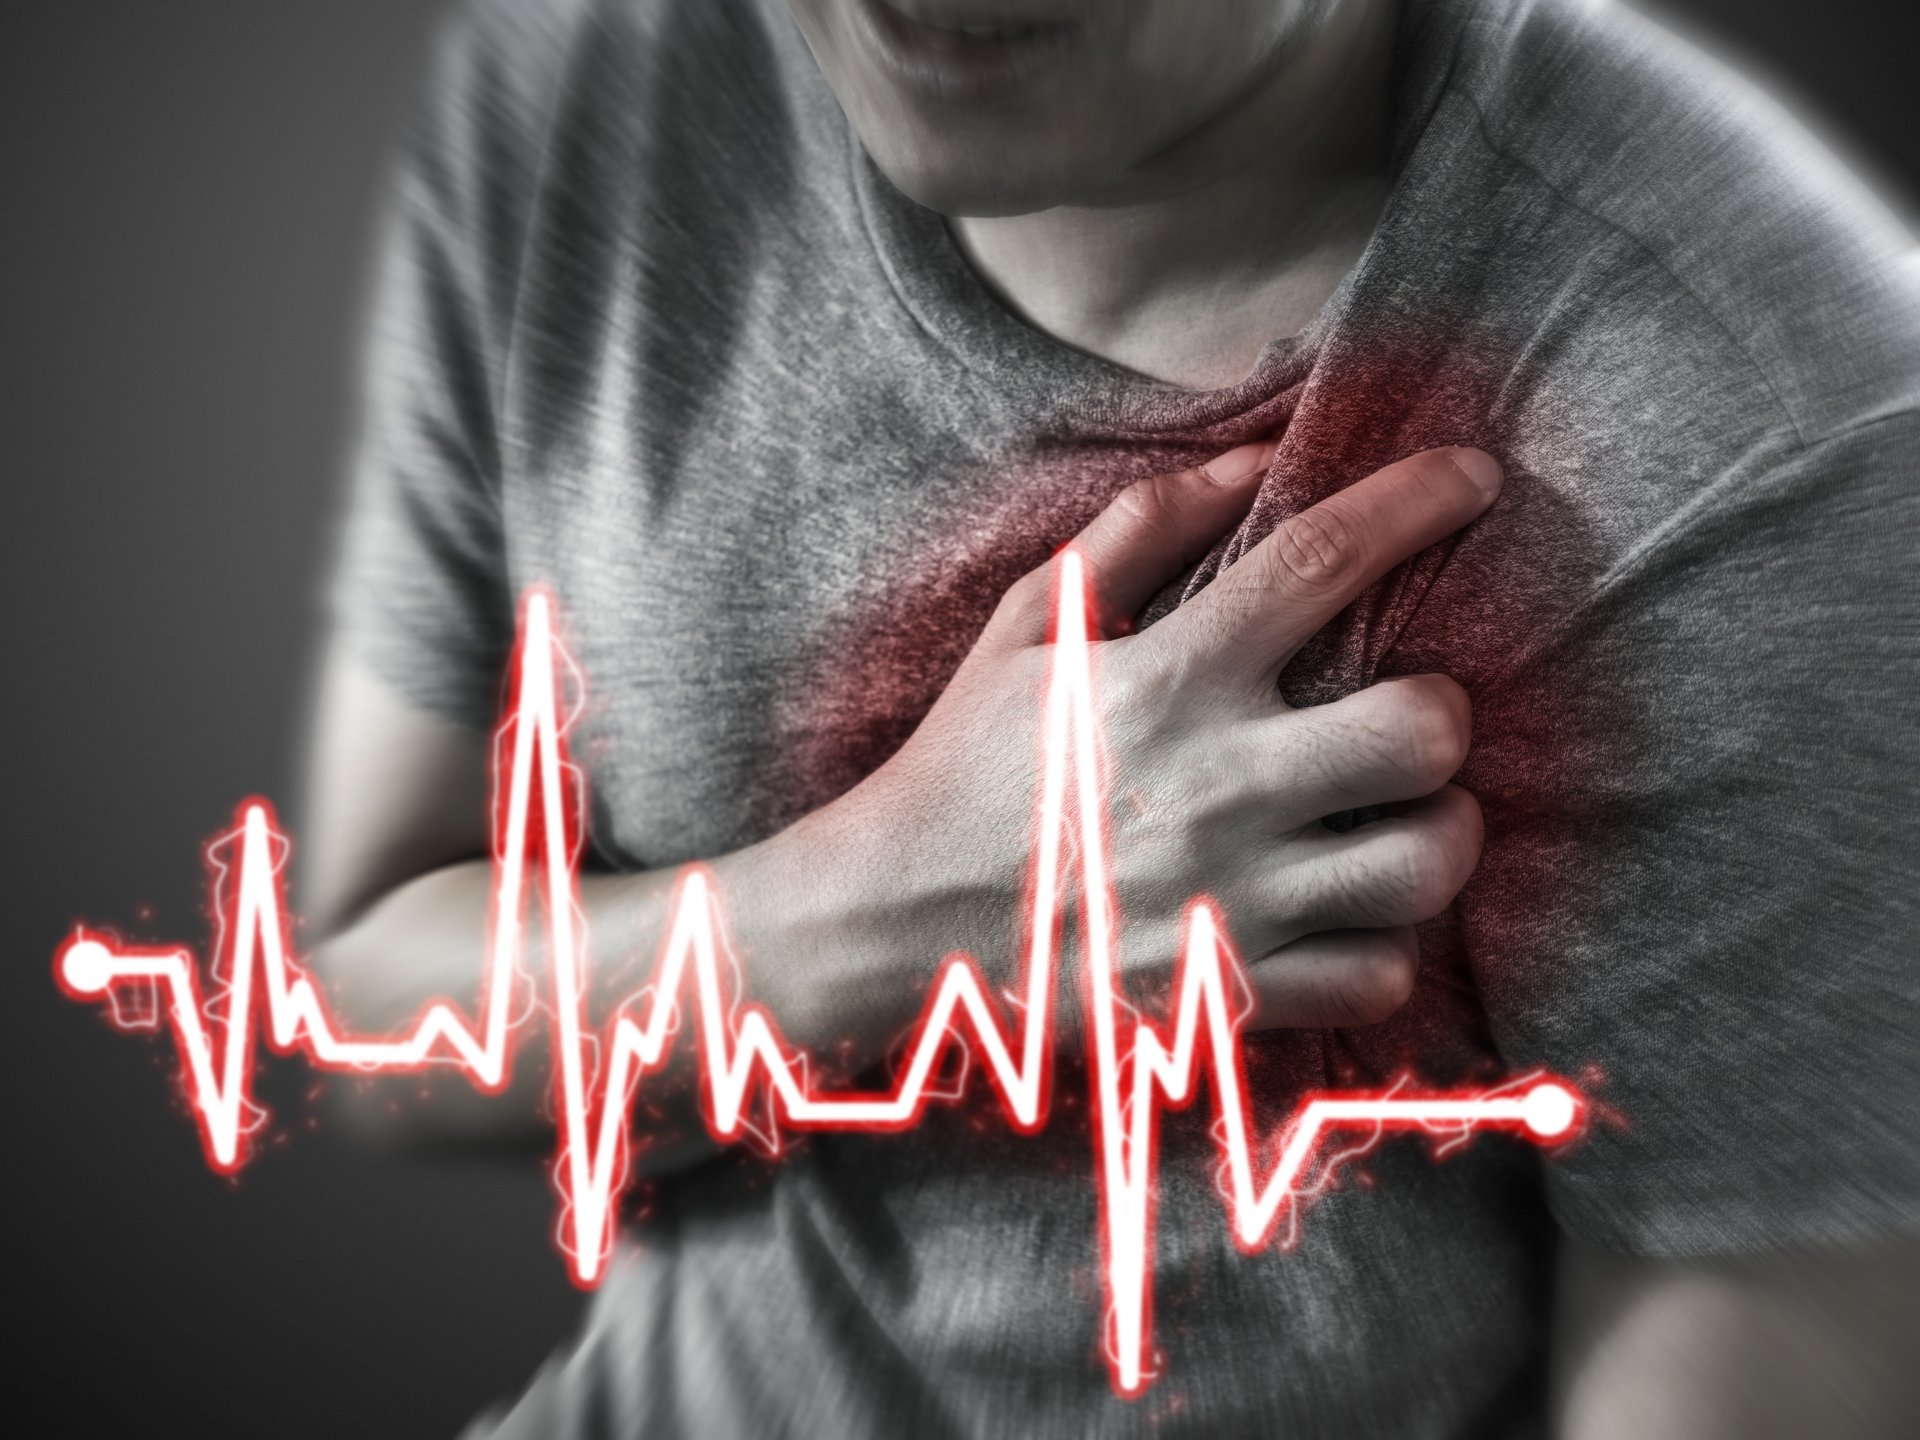 Кардиолог назова класическия симптом за инфаркт на миокарда